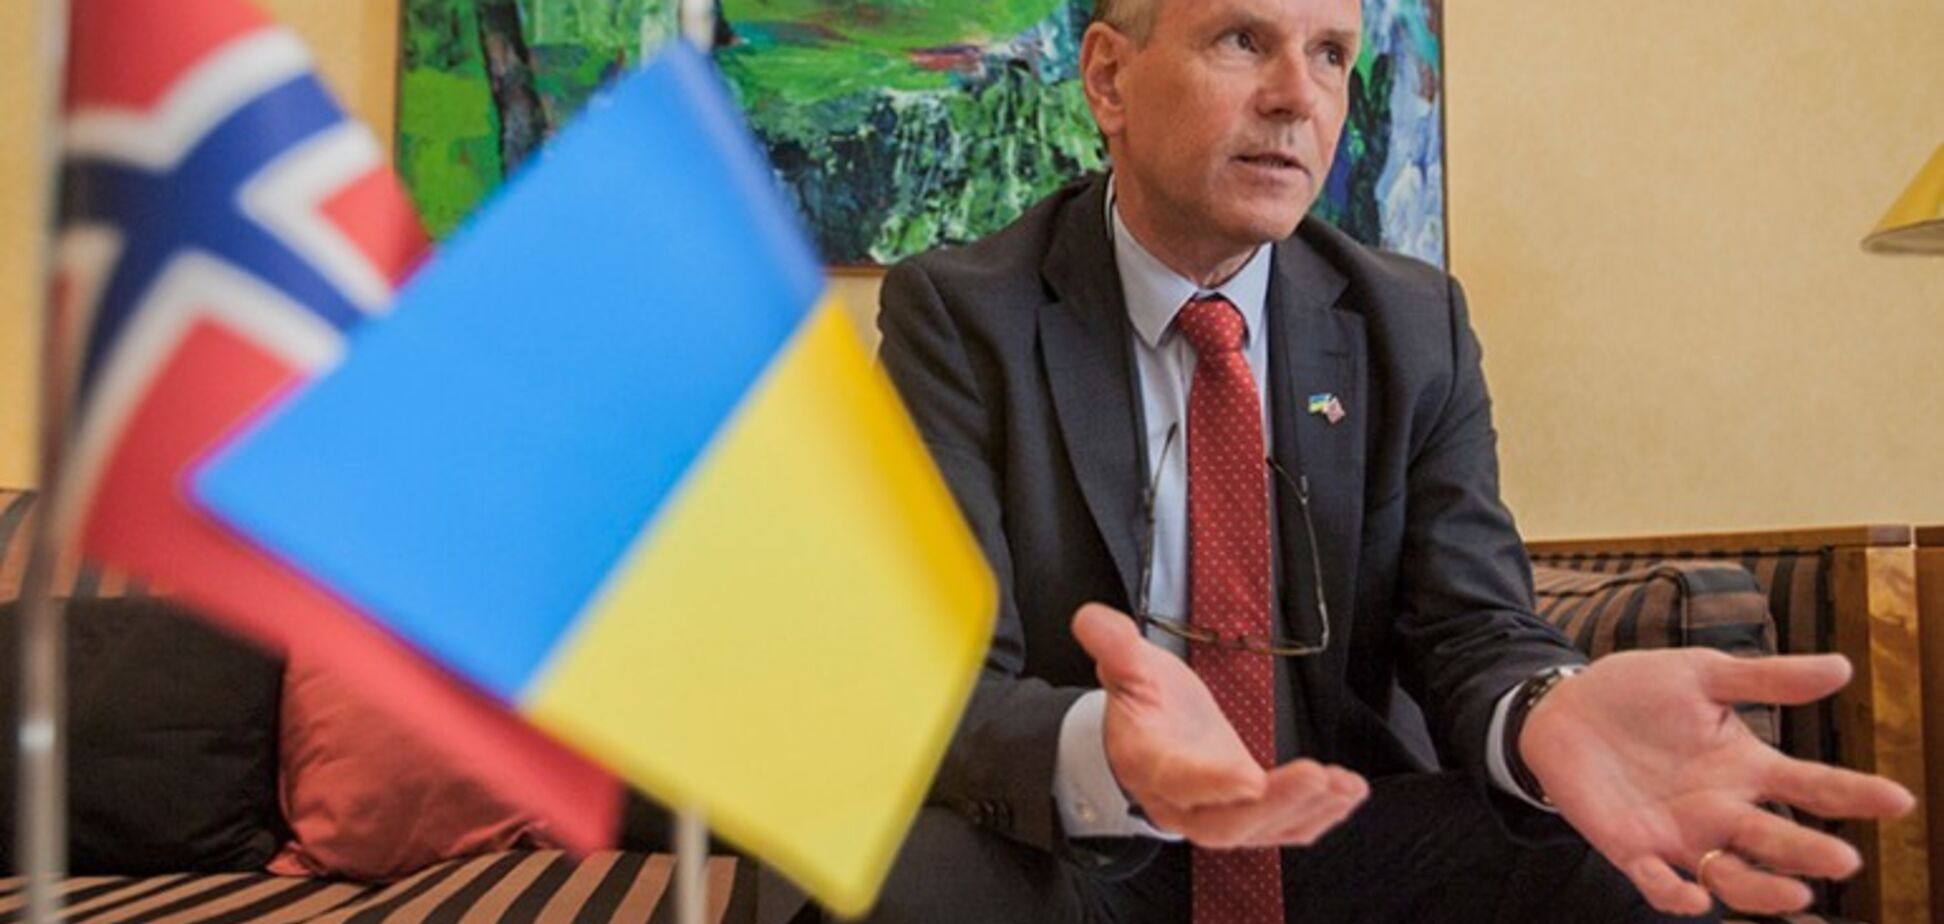 Норвежцы не знают, закончился ли конфликт на Донбассе - посол